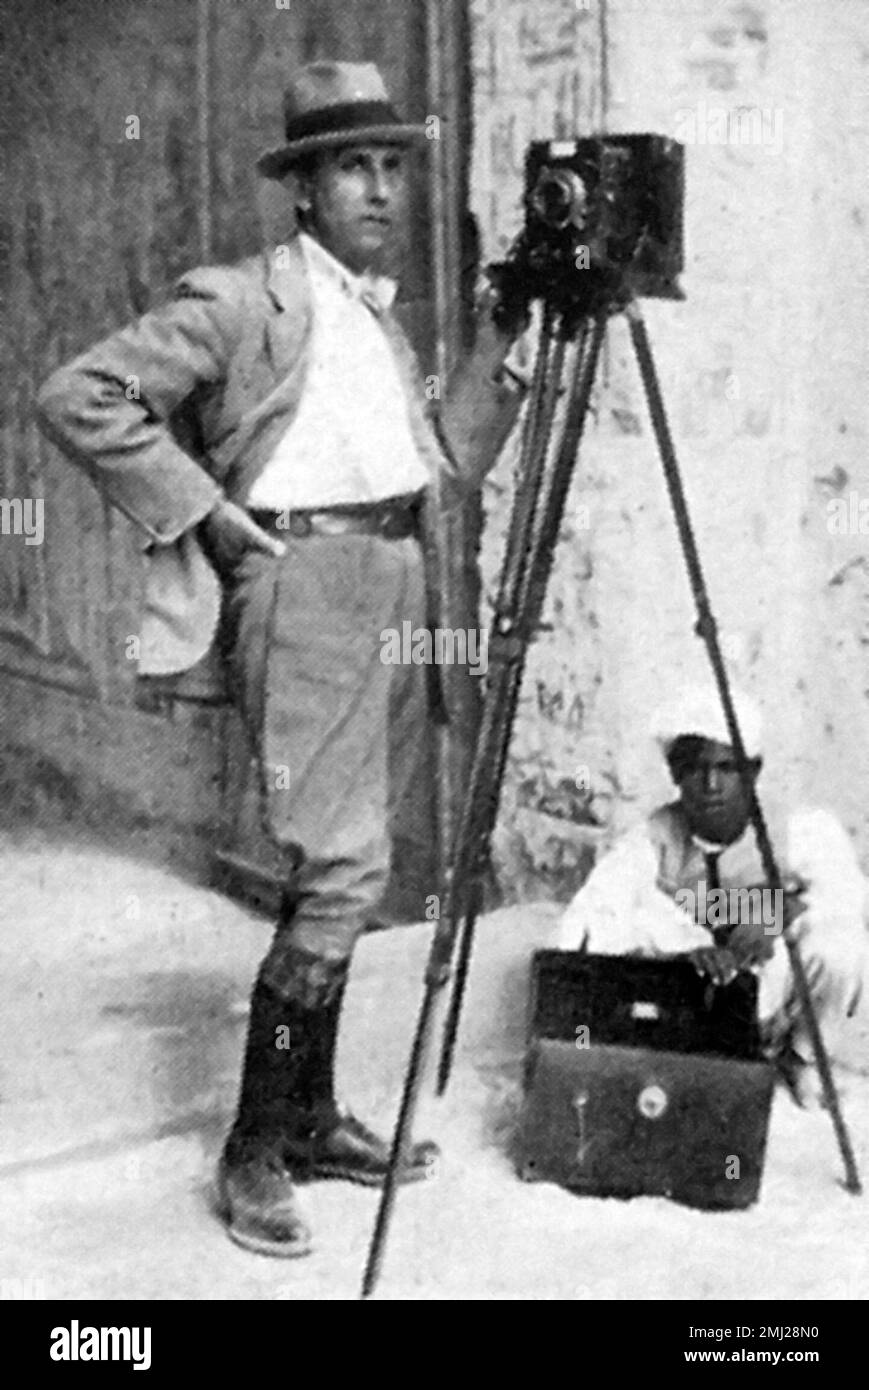 Harry Burton. Photographie de l'égyptologue Harry Burton (1879-1940) prise en 1923 Banque D'Images